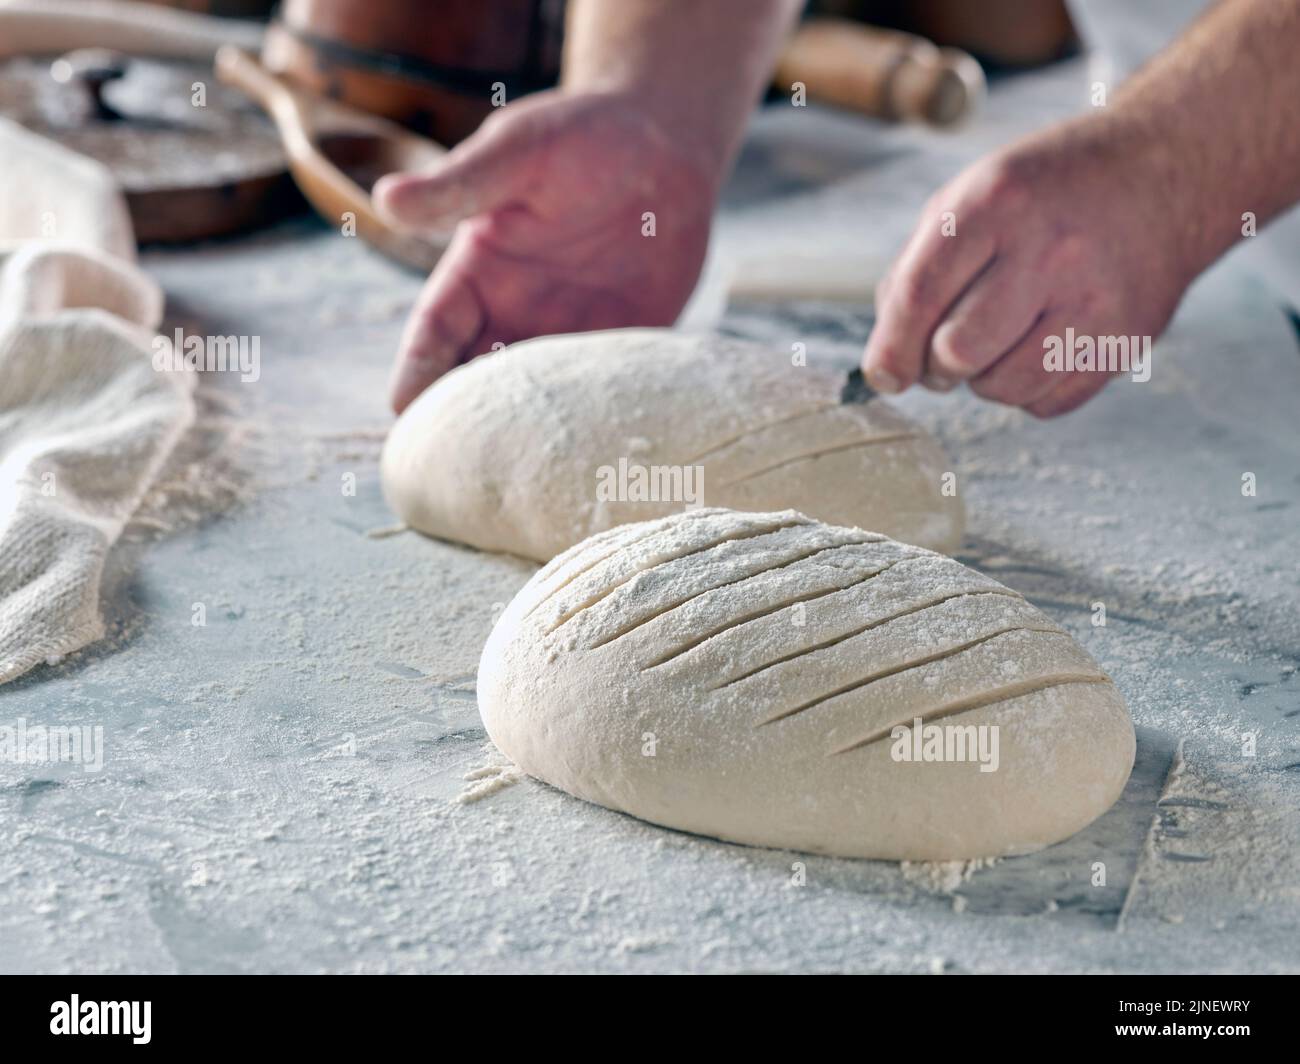 Fabrication de pain artisanal Banque D'Images